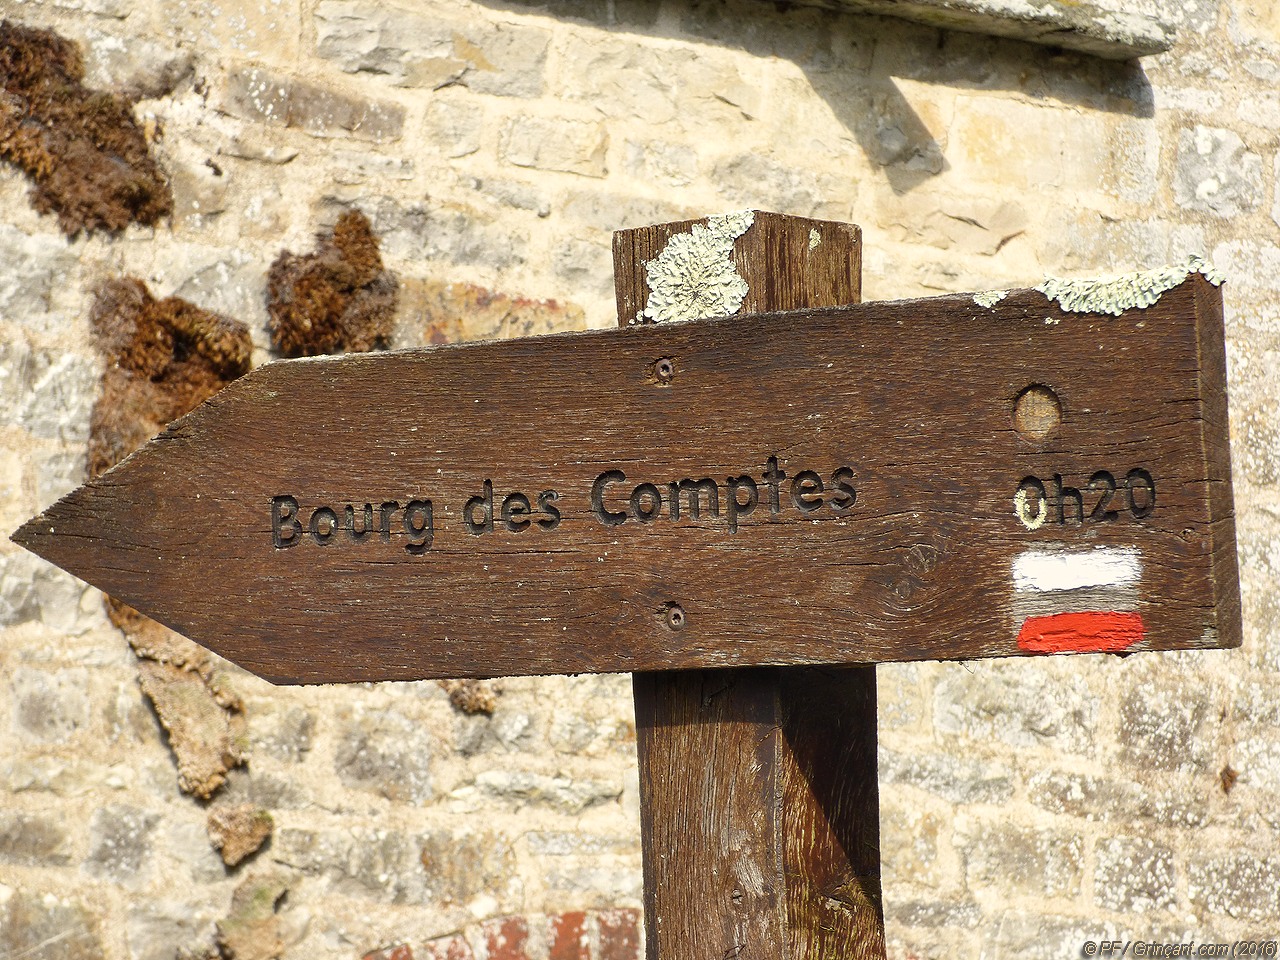 Panneau bois "Bourg-des-Comptes 0h20"